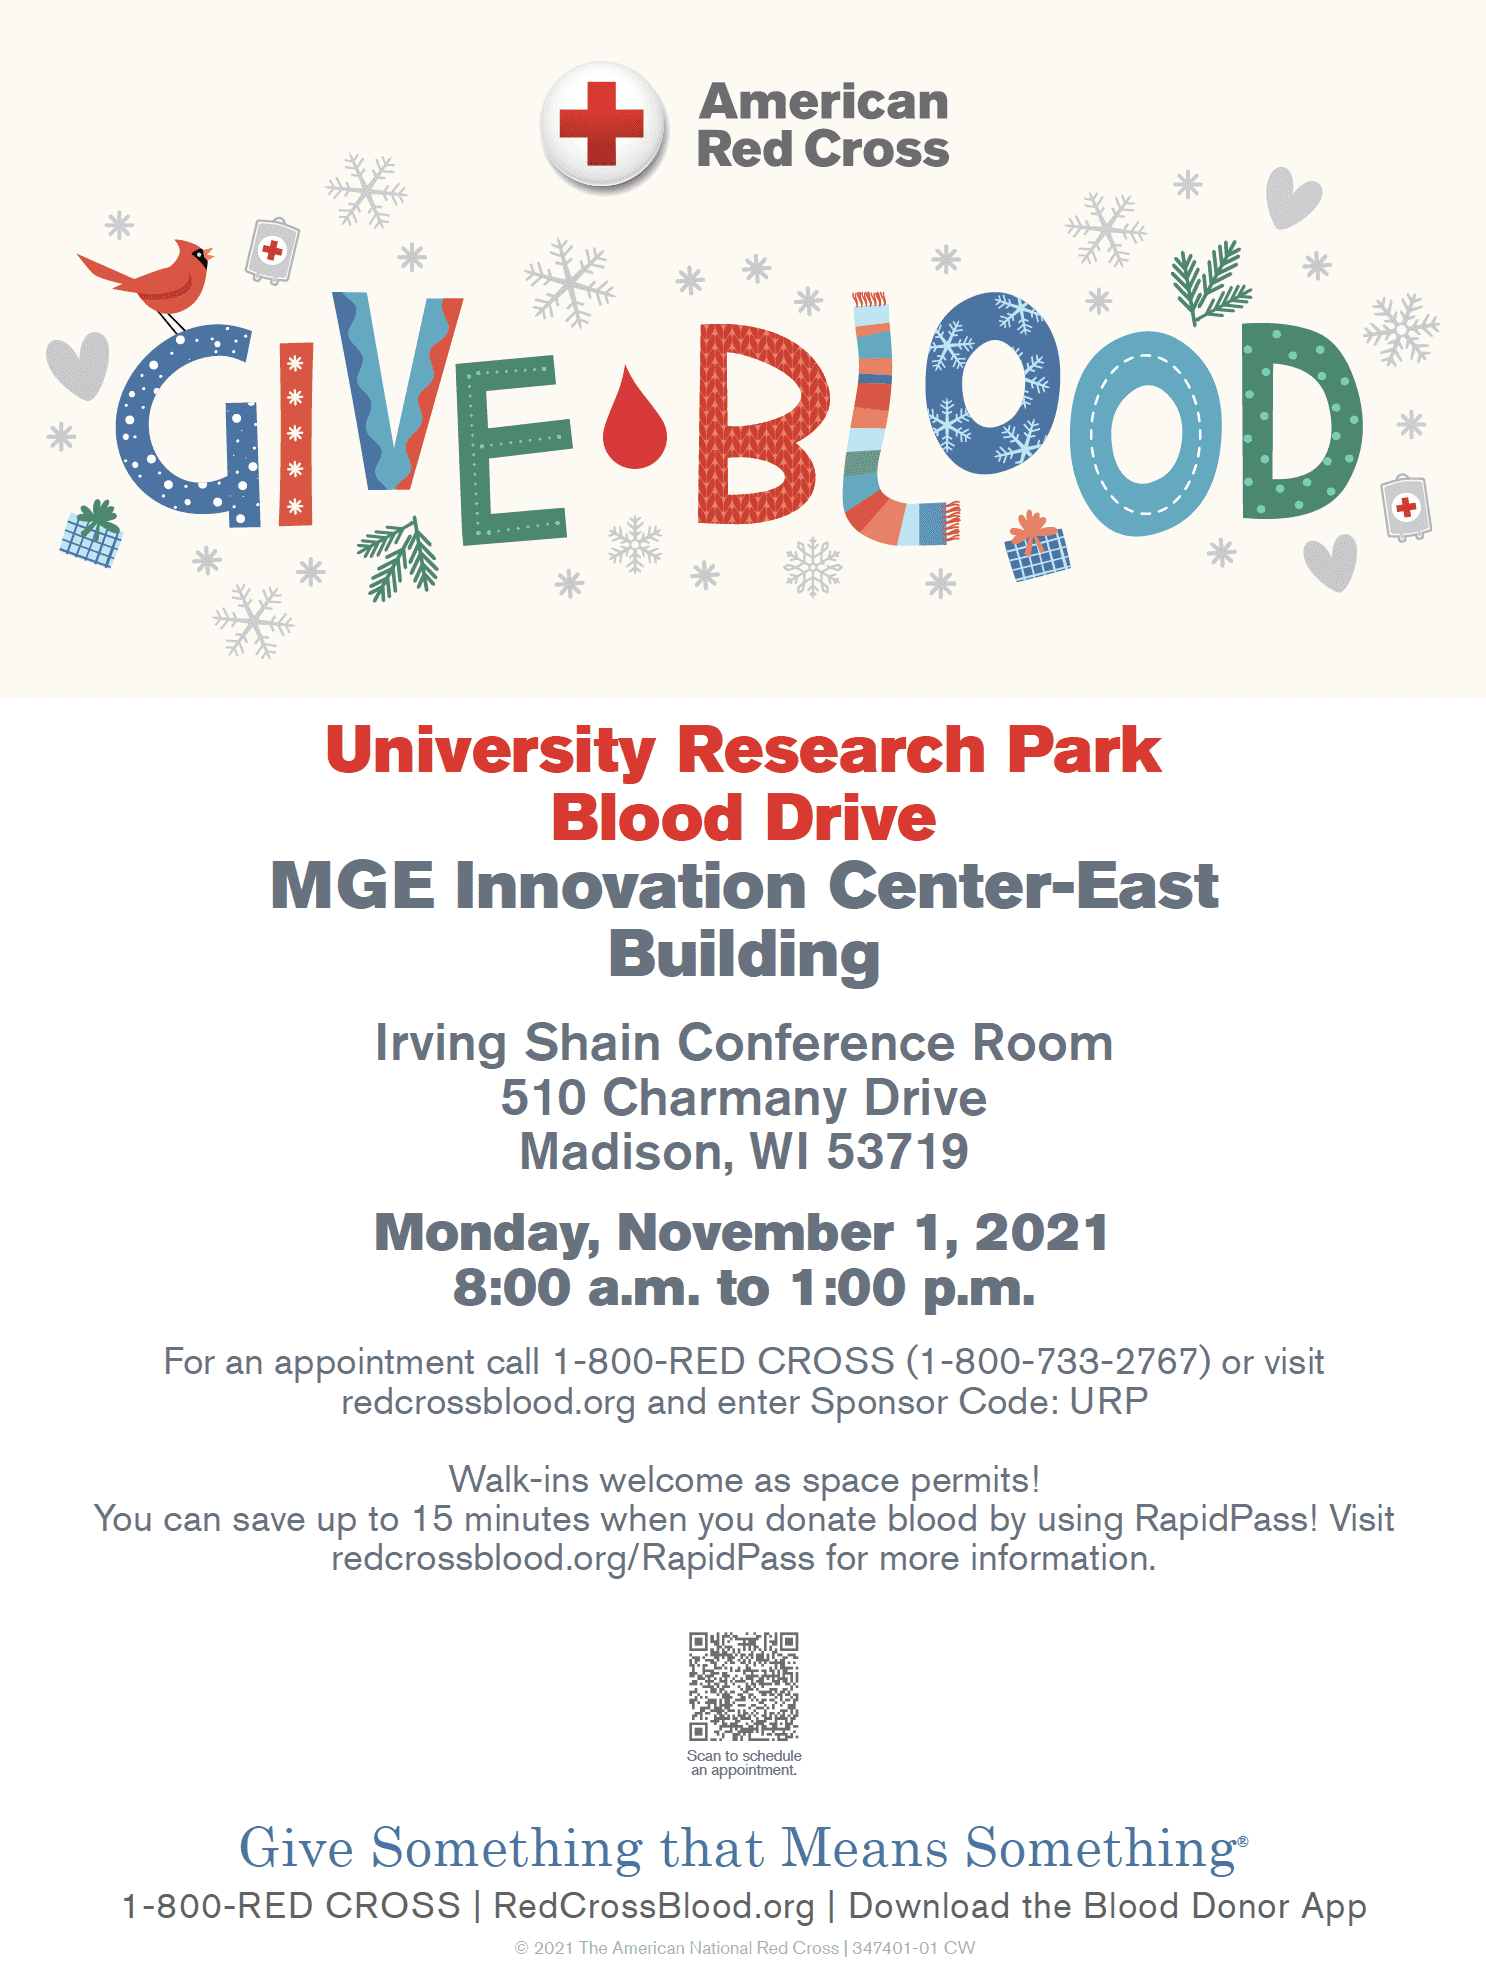 University Research Park Blood Drive